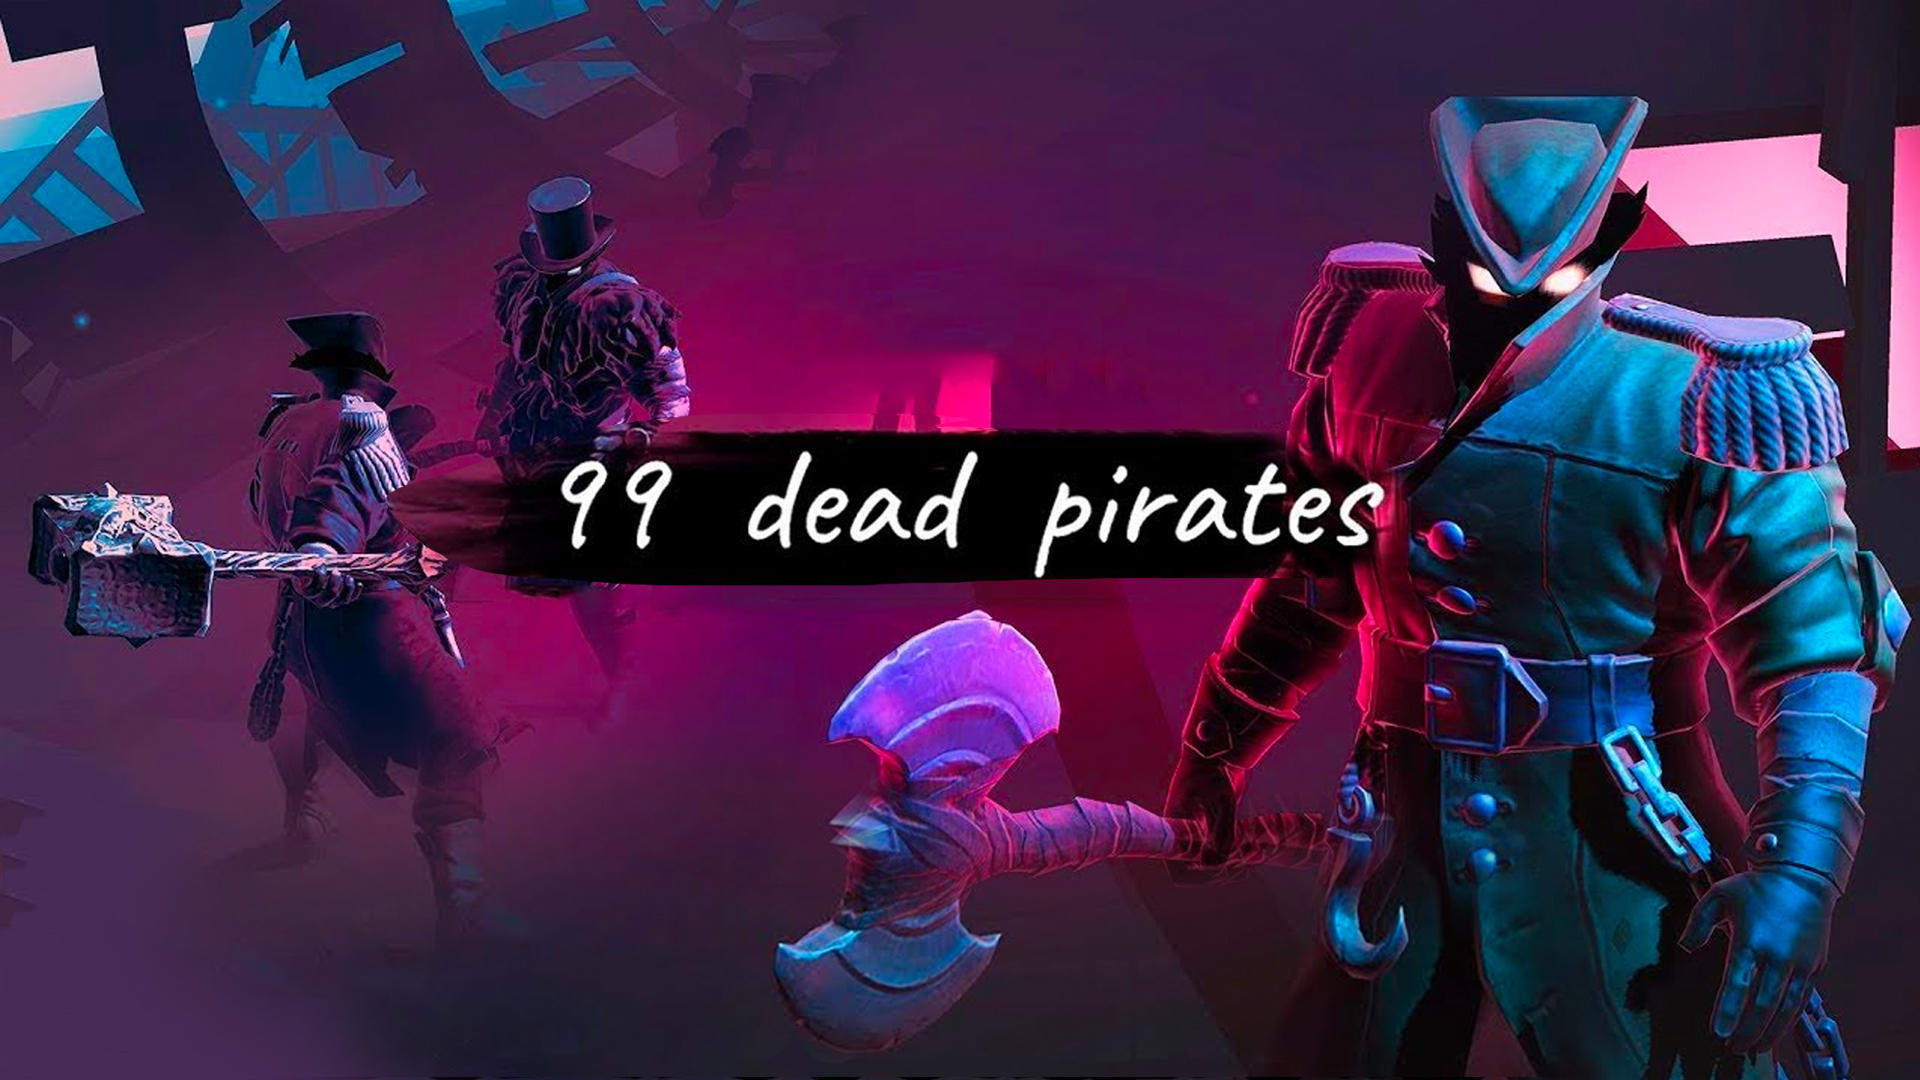 Banner of 99 tên cướp biển đã chết 1.22